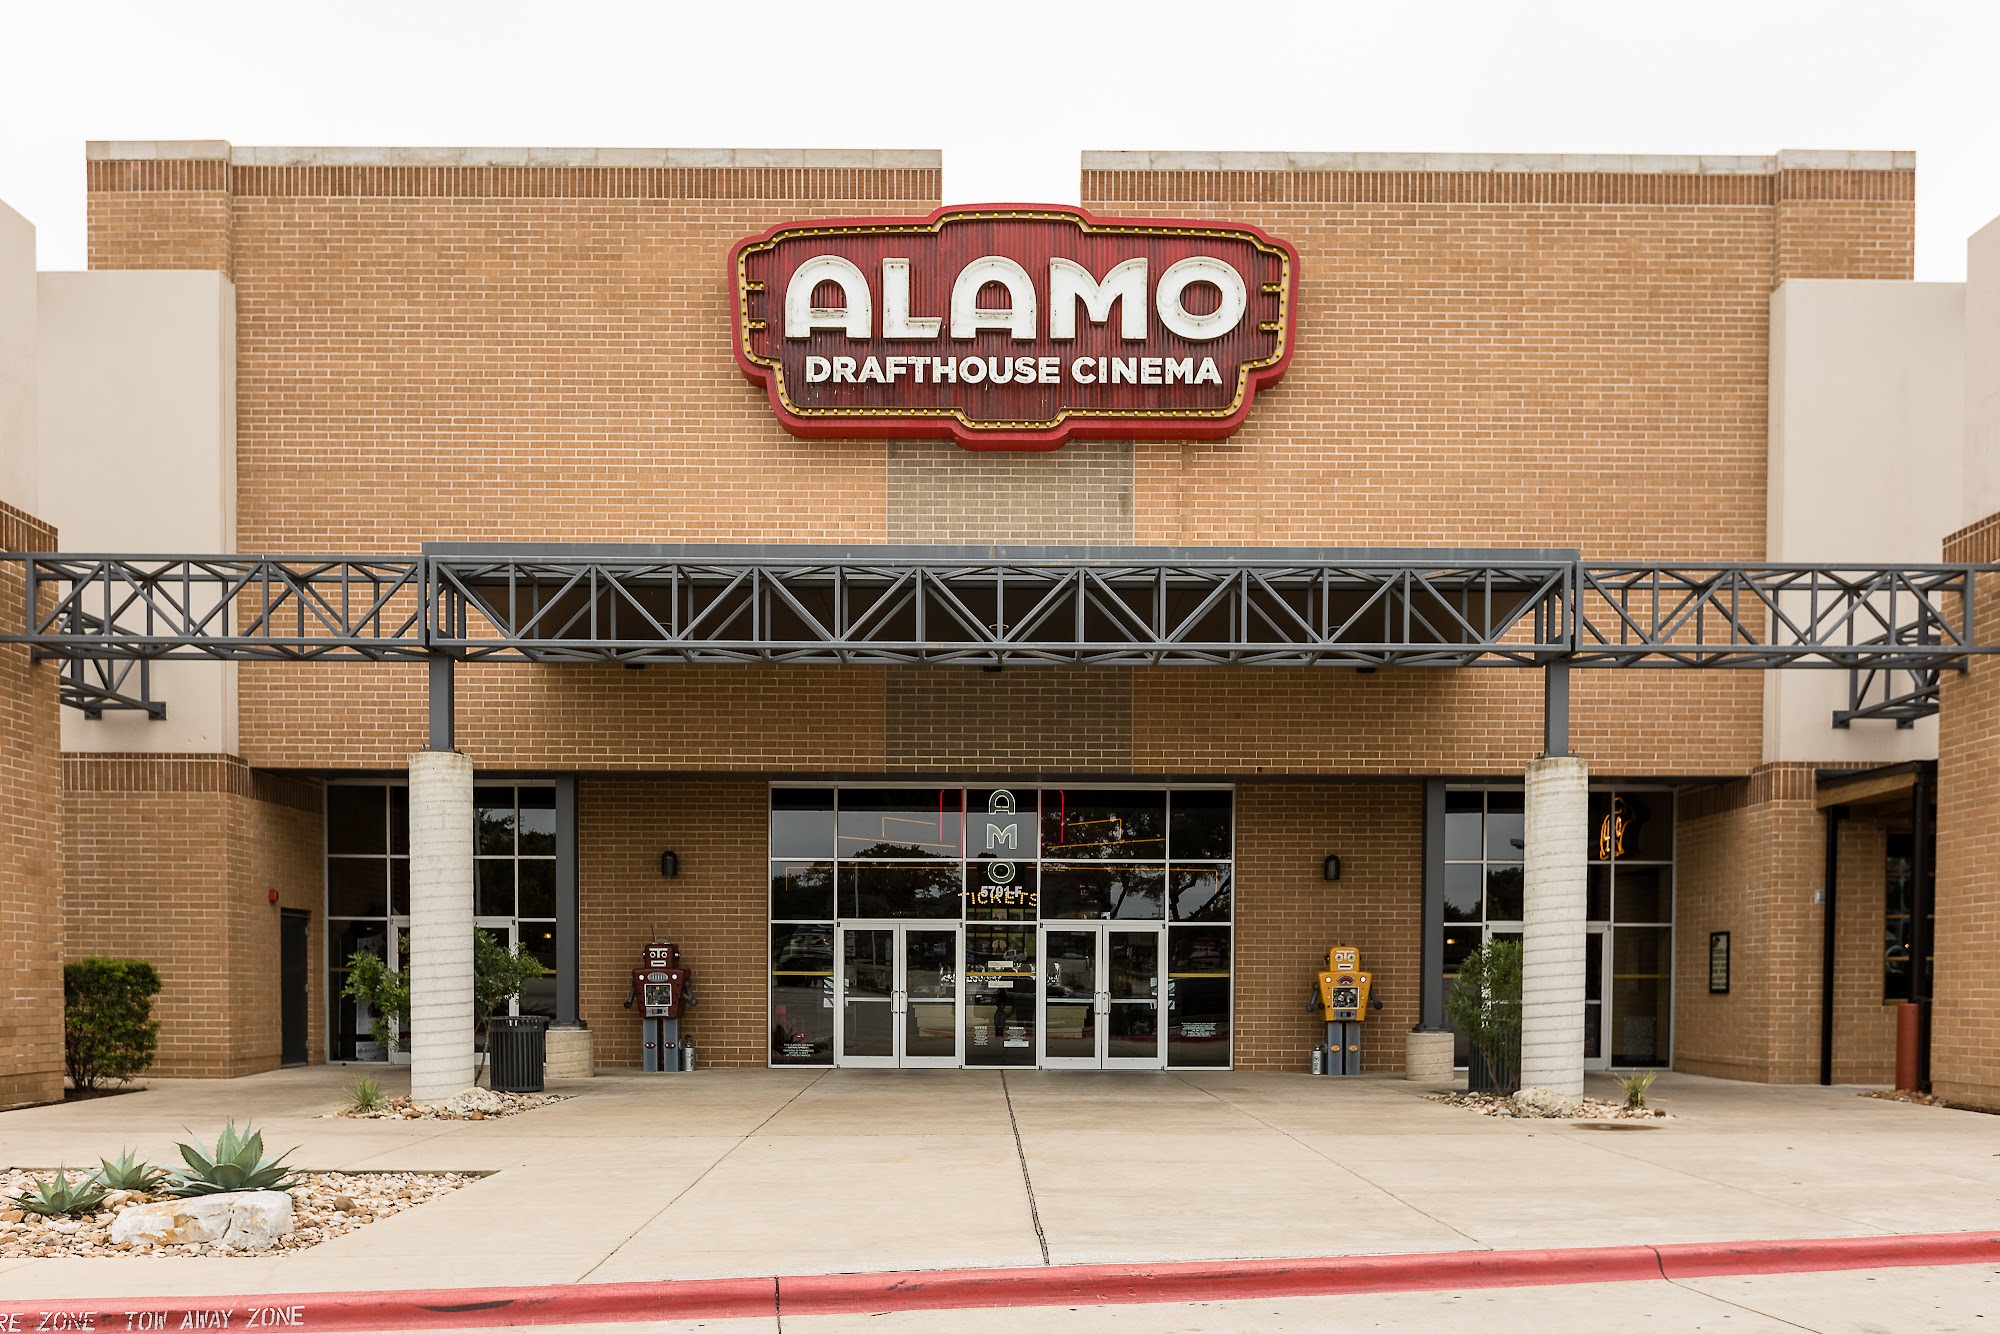 Alamo Drafthouse Cinema Slaughter Lane